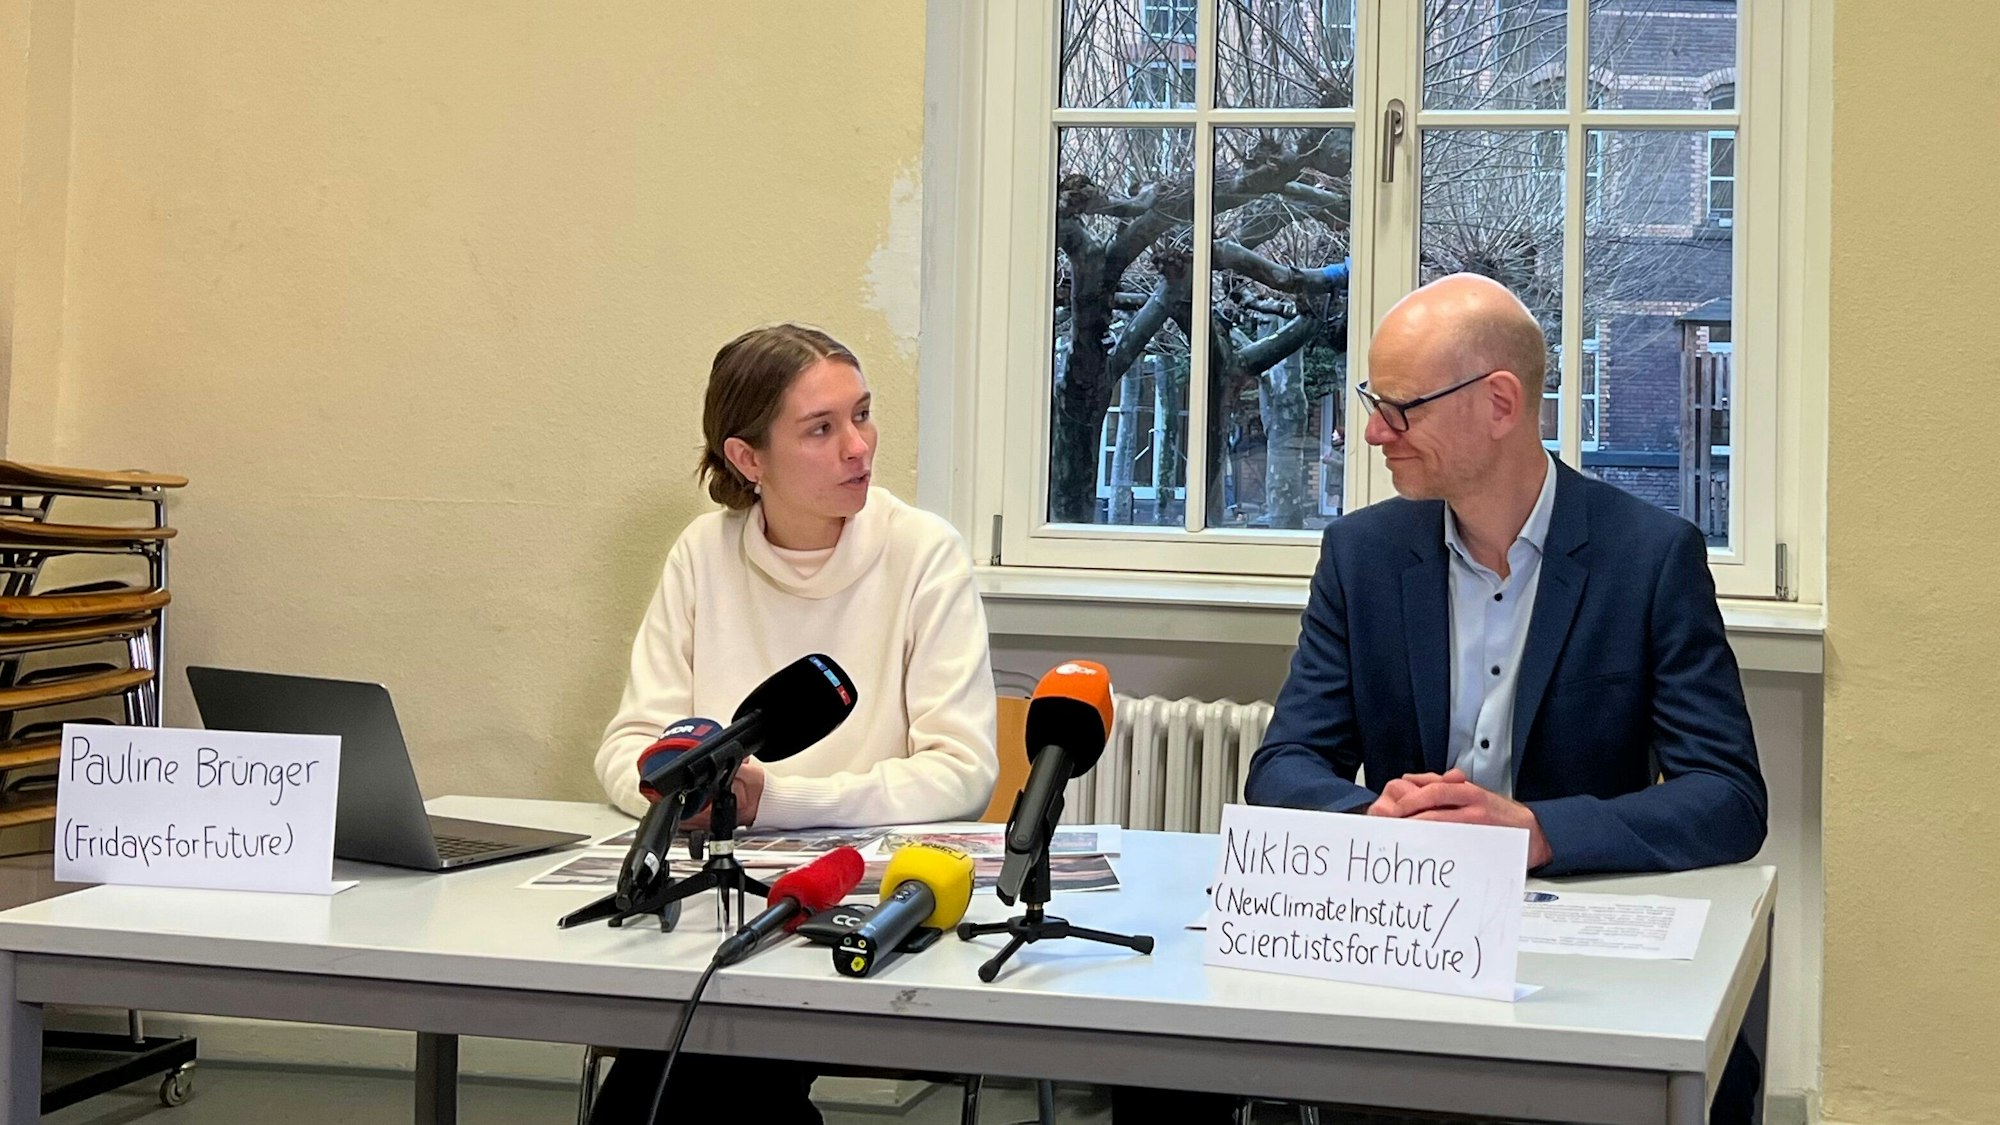 Pauline Brünger und Niklas Höhne bei der Pressekonferenz.